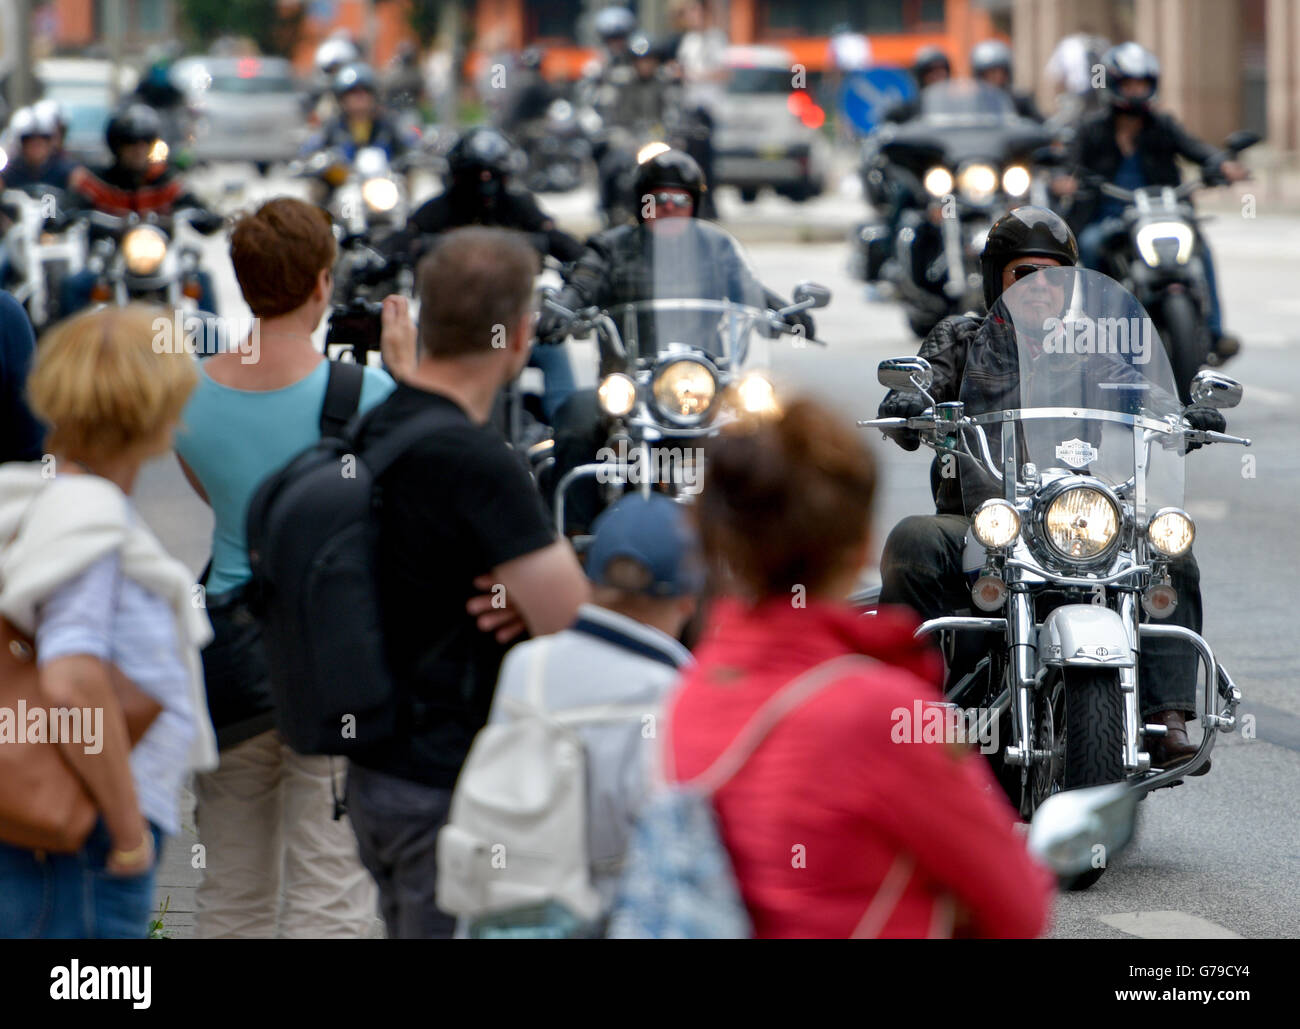 Hamburg, Deutschland. 26. Juni 2016. Menschen fahren ihren Harley Davidson Motorrädern durch die Innenstadt von Hamburg, Germany, 26. Juni 2016. Die Harley Days kulminieren in der traditionellen Motorrad-Parade. Foto: AXEL HEIMKEN/Dpa/Alamy Live News Stockfoto